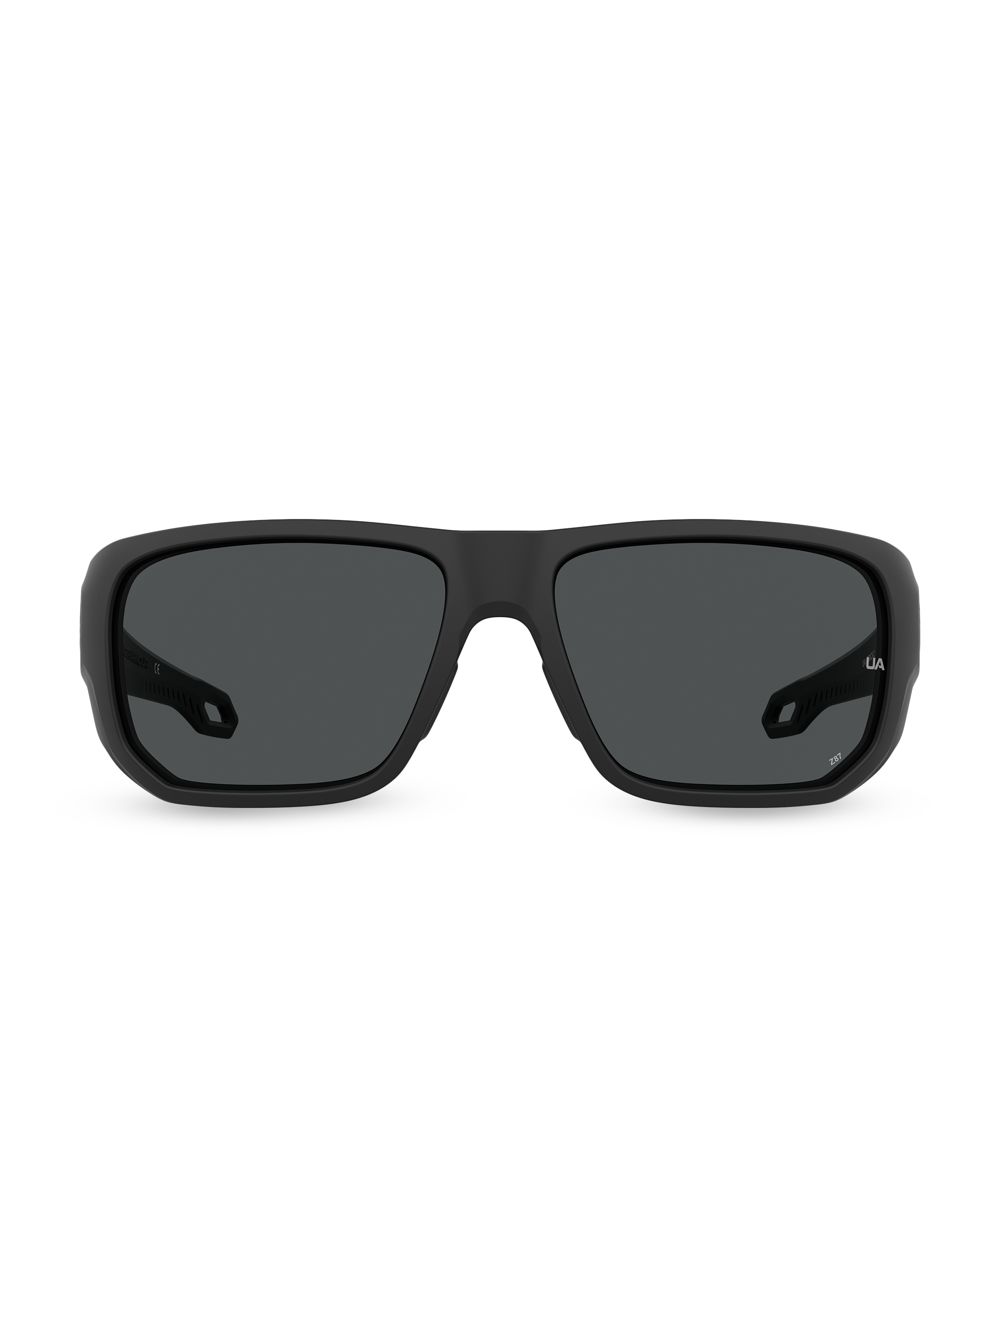 Квадратные солнцезащитные очки Attack 63MM Under Armour, черный